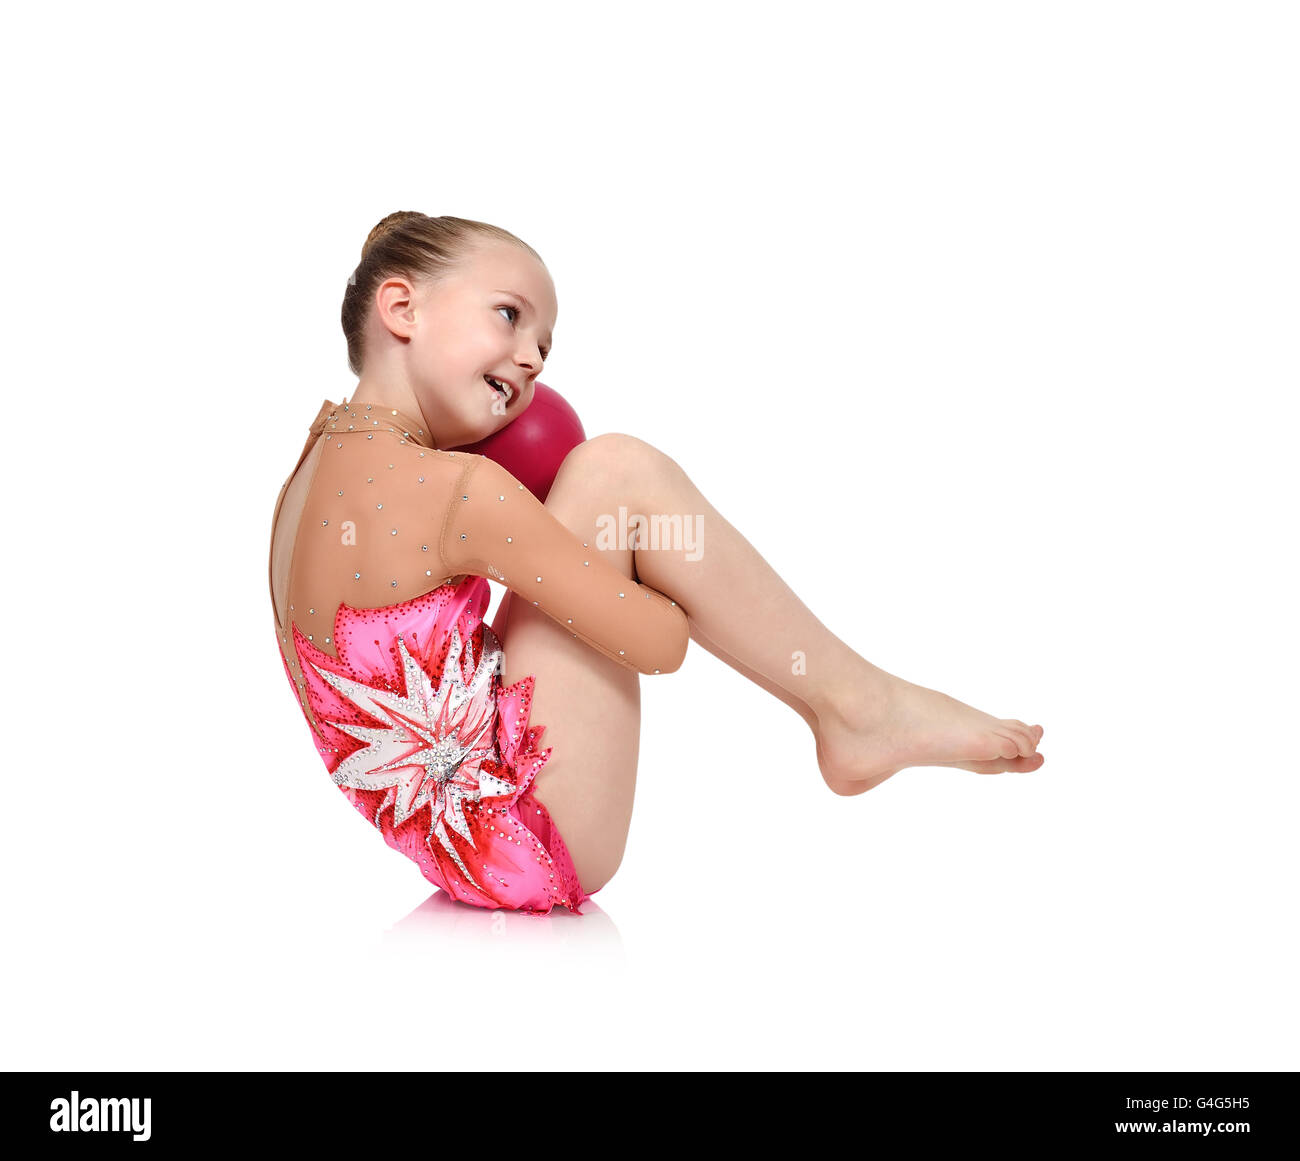 Petite fille gymnaste en rouge vêtements posant avec la balle Banque D'Images